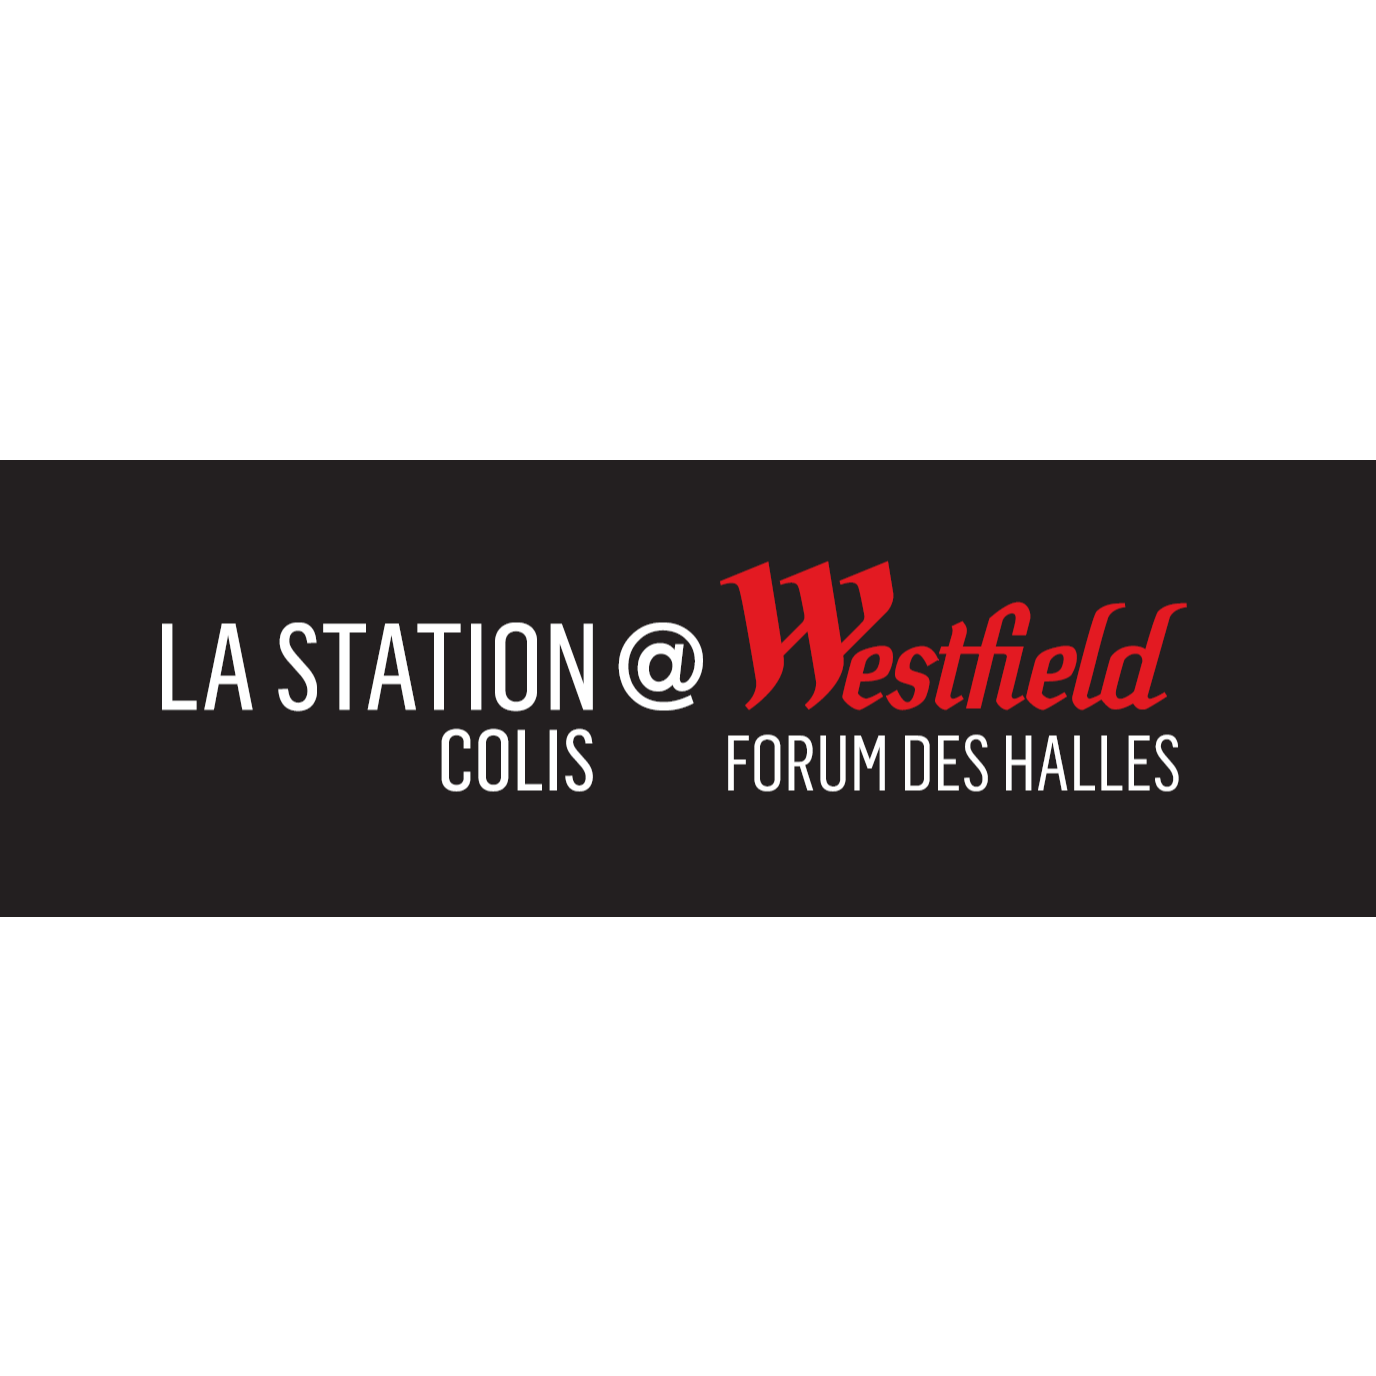 La Station Colis @Westfield Forum Des Halles Logo